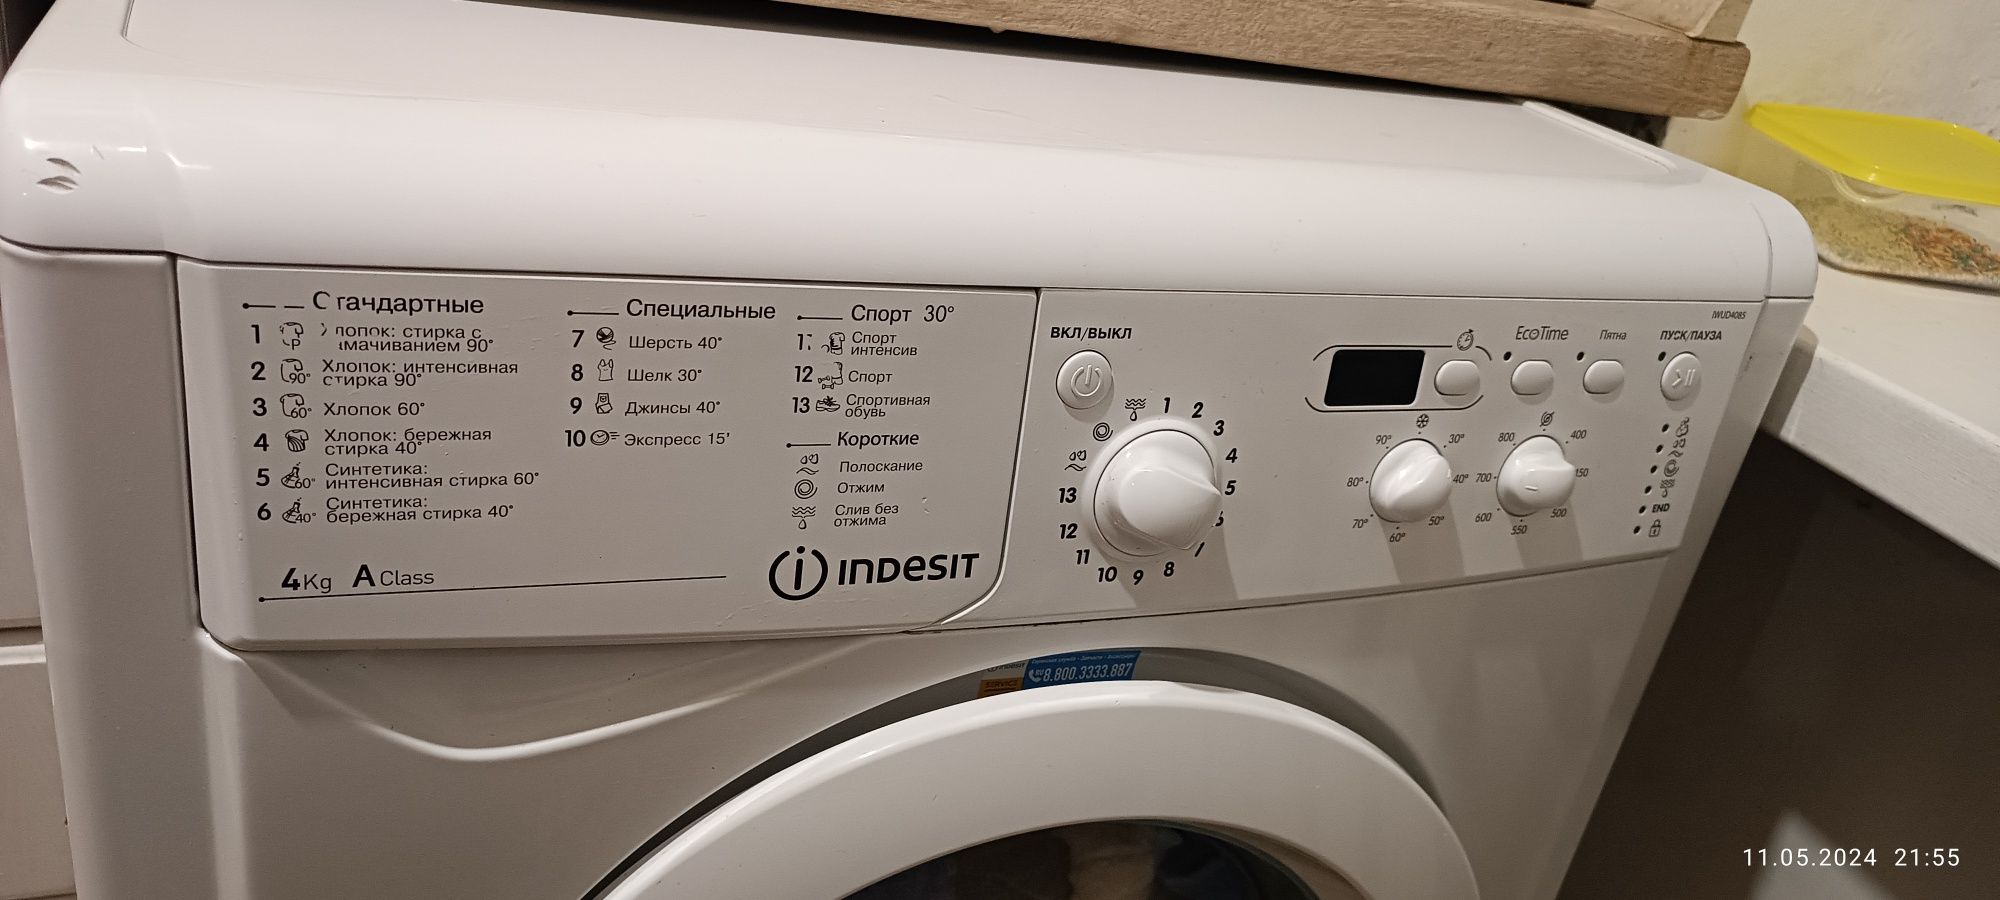 Продам стиральную машинку indesit на 4кг